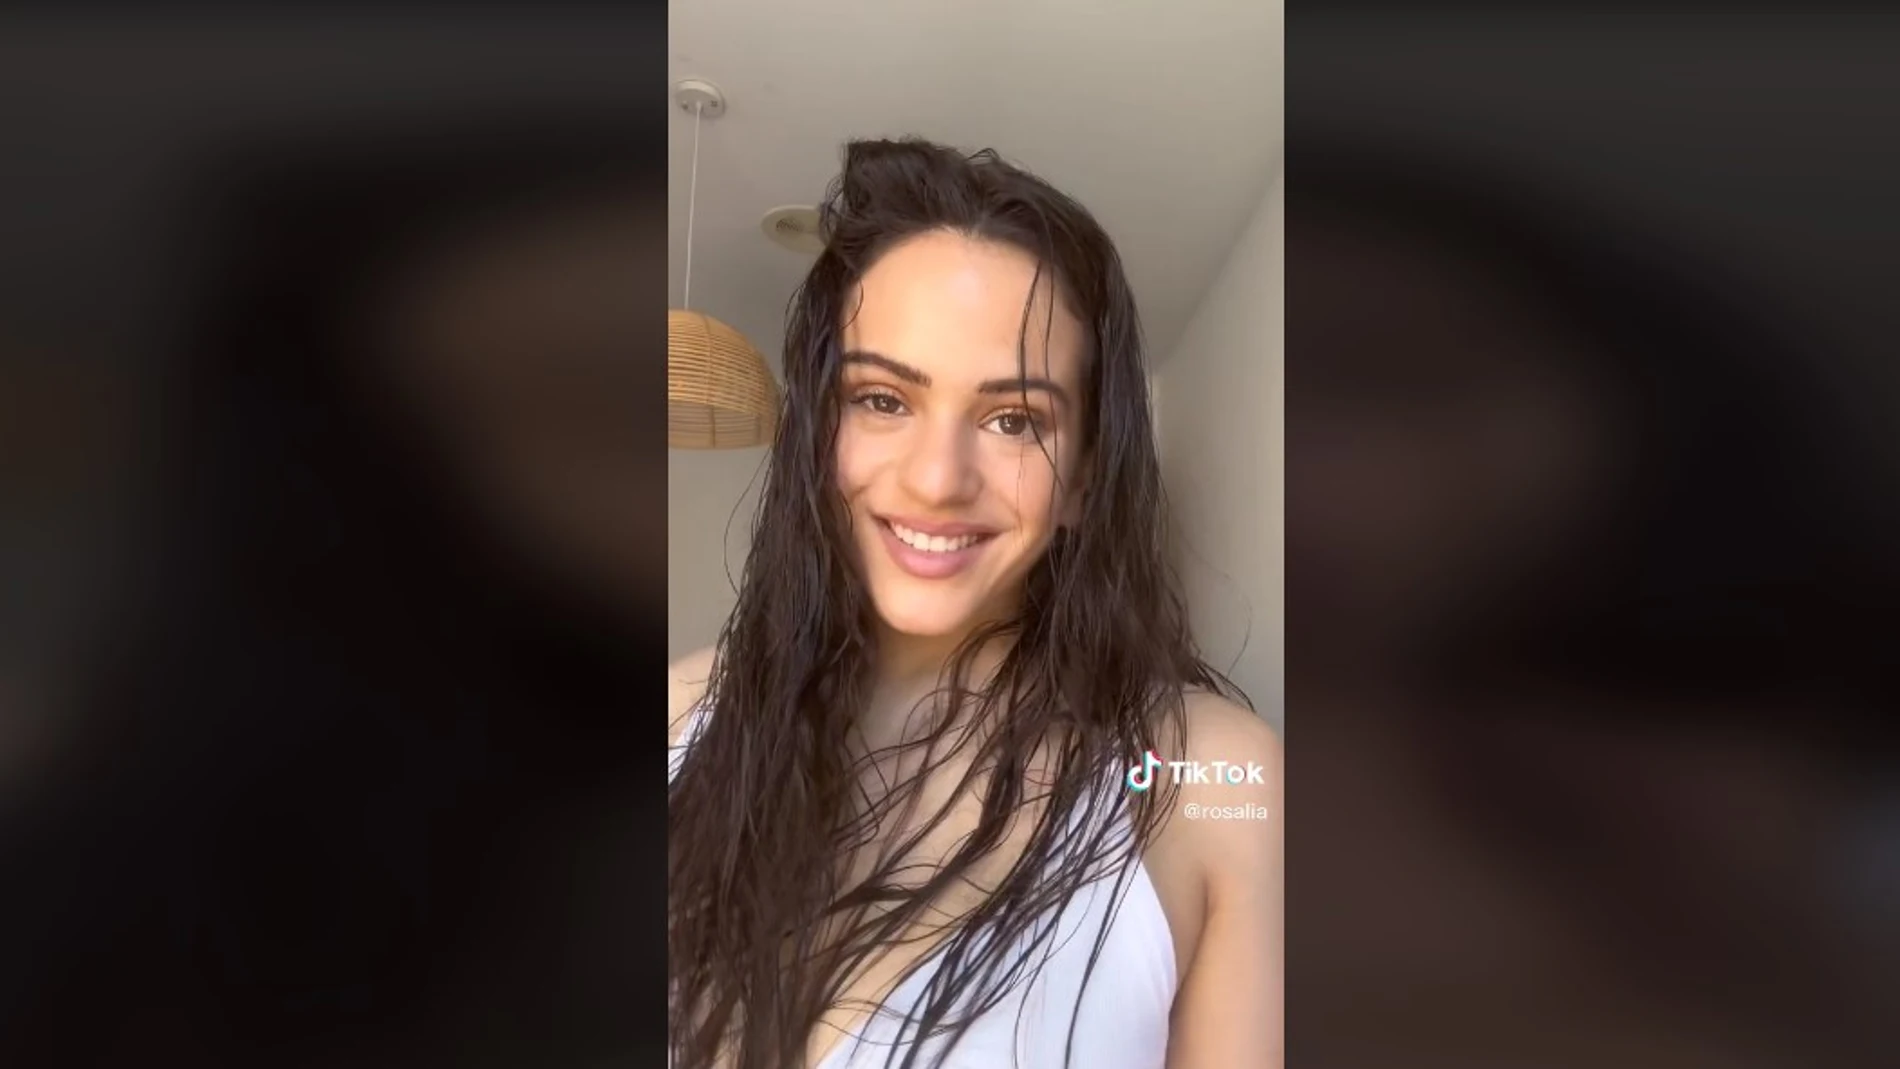 Rosalía en el vídeo promocional de LLYLM